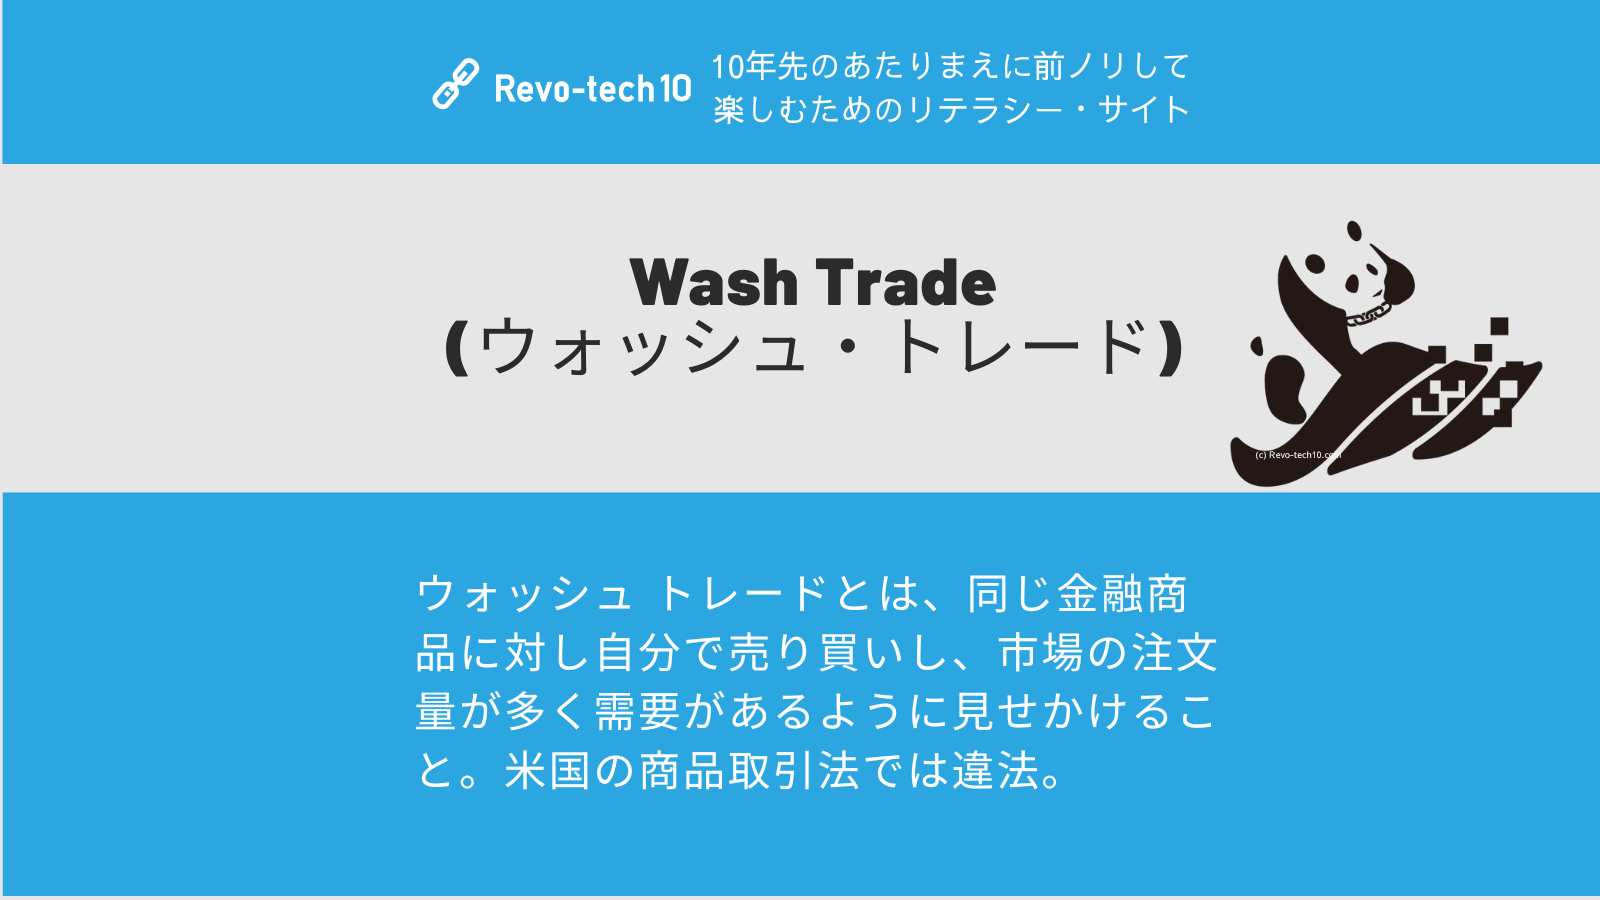 0080_Wash Trade (ウォッシュ・トレード)とは、ウォッシュ トレードとは、同じ金融商品に対し自分で売り買いし、市場の注文量が多く需要があるように見せかけること。米国の商品取引法では違法。